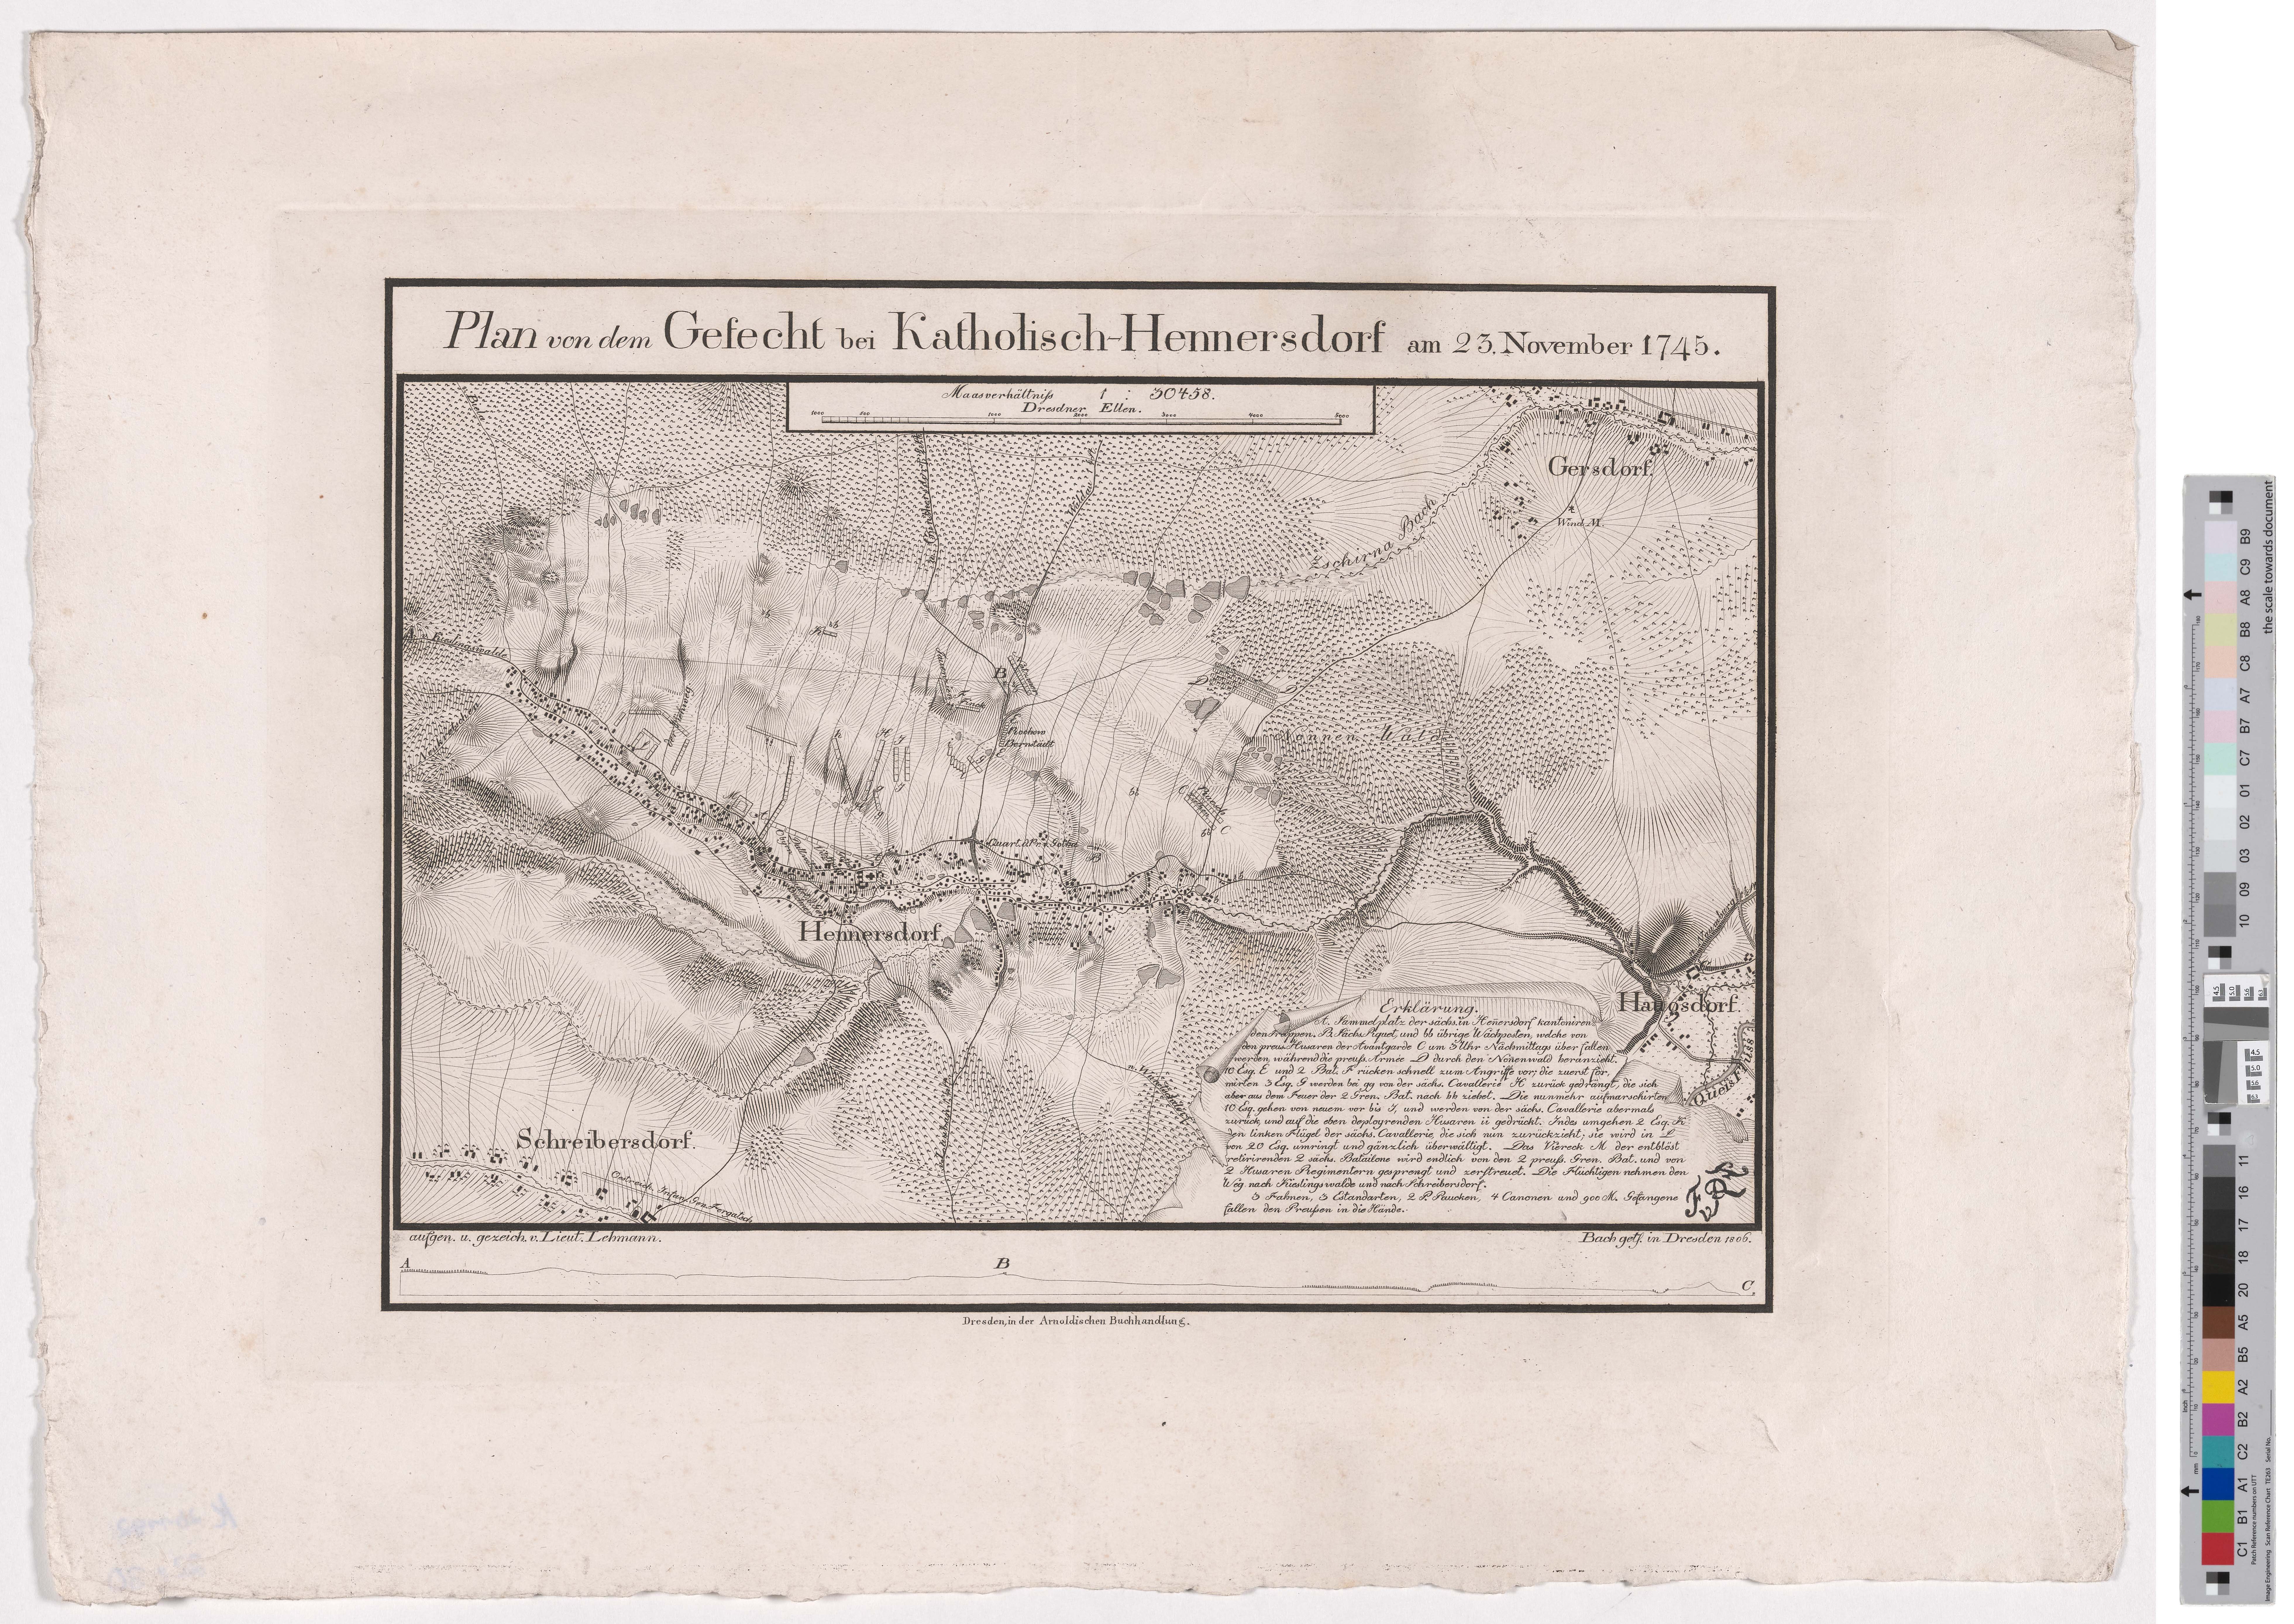 Militärkarte "Plan von dem Gefecht bei Katholisch-Hennersdorf" (Kreismuseum Grimma RR-F)